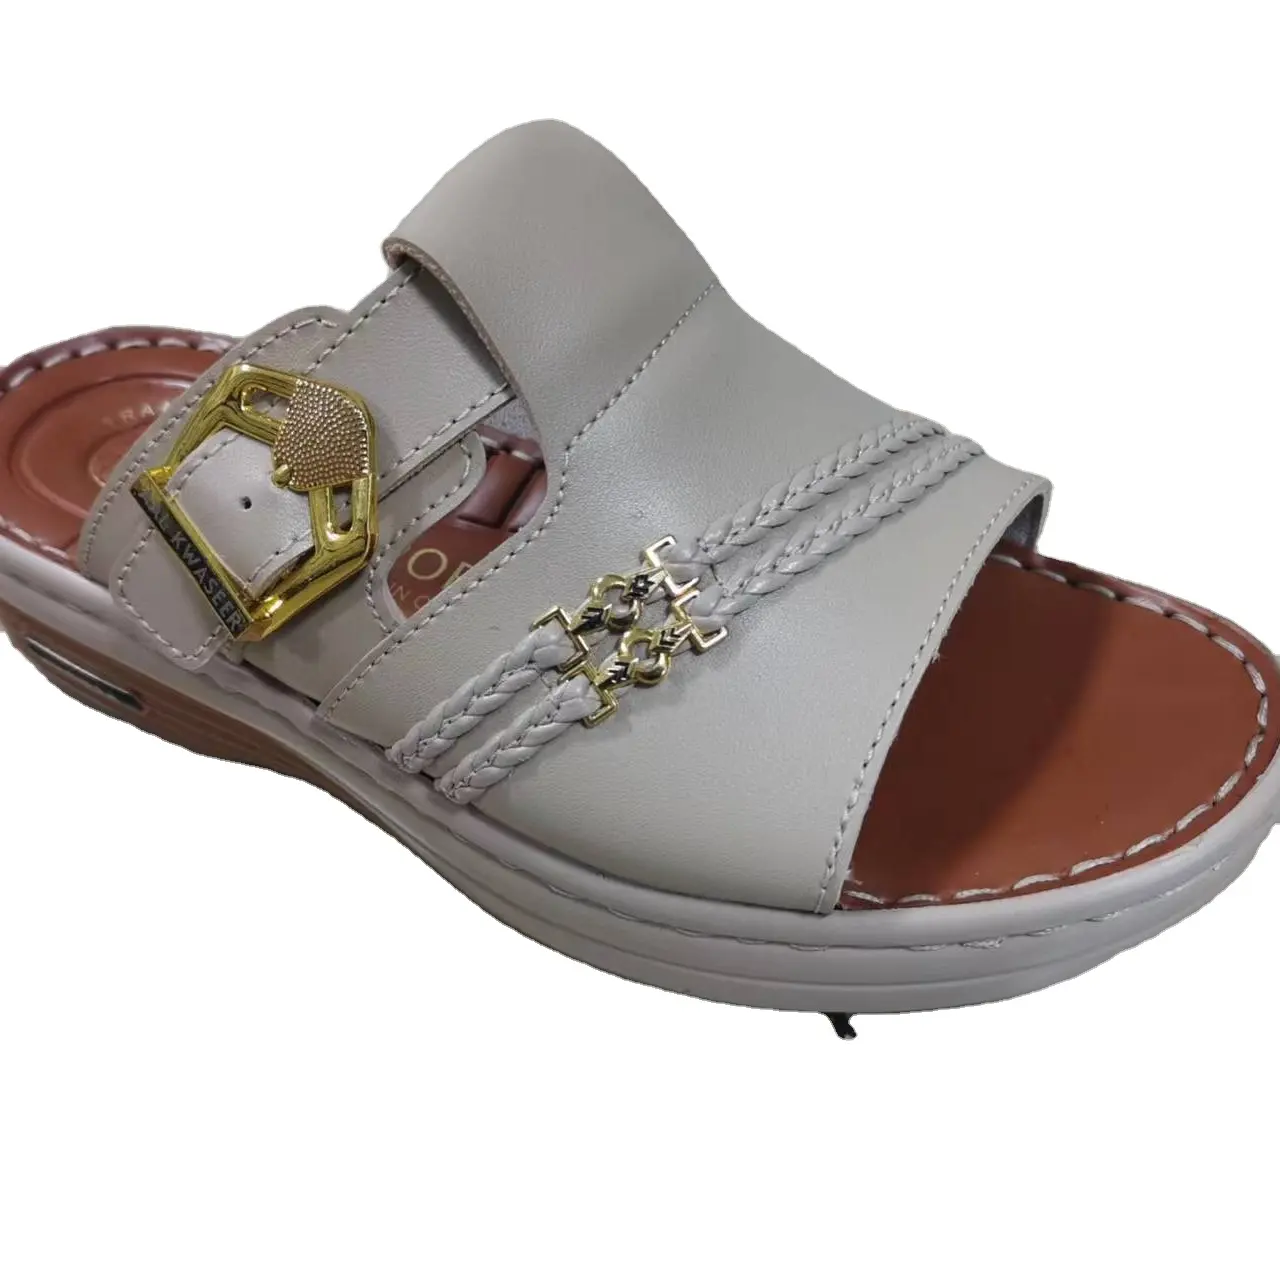 OEM Footwear Sandal Saudi Arabia Men PVC Men Made Leather Sandal Slippers Men Plain Slide Sandal Slippers Custom Logo Slide